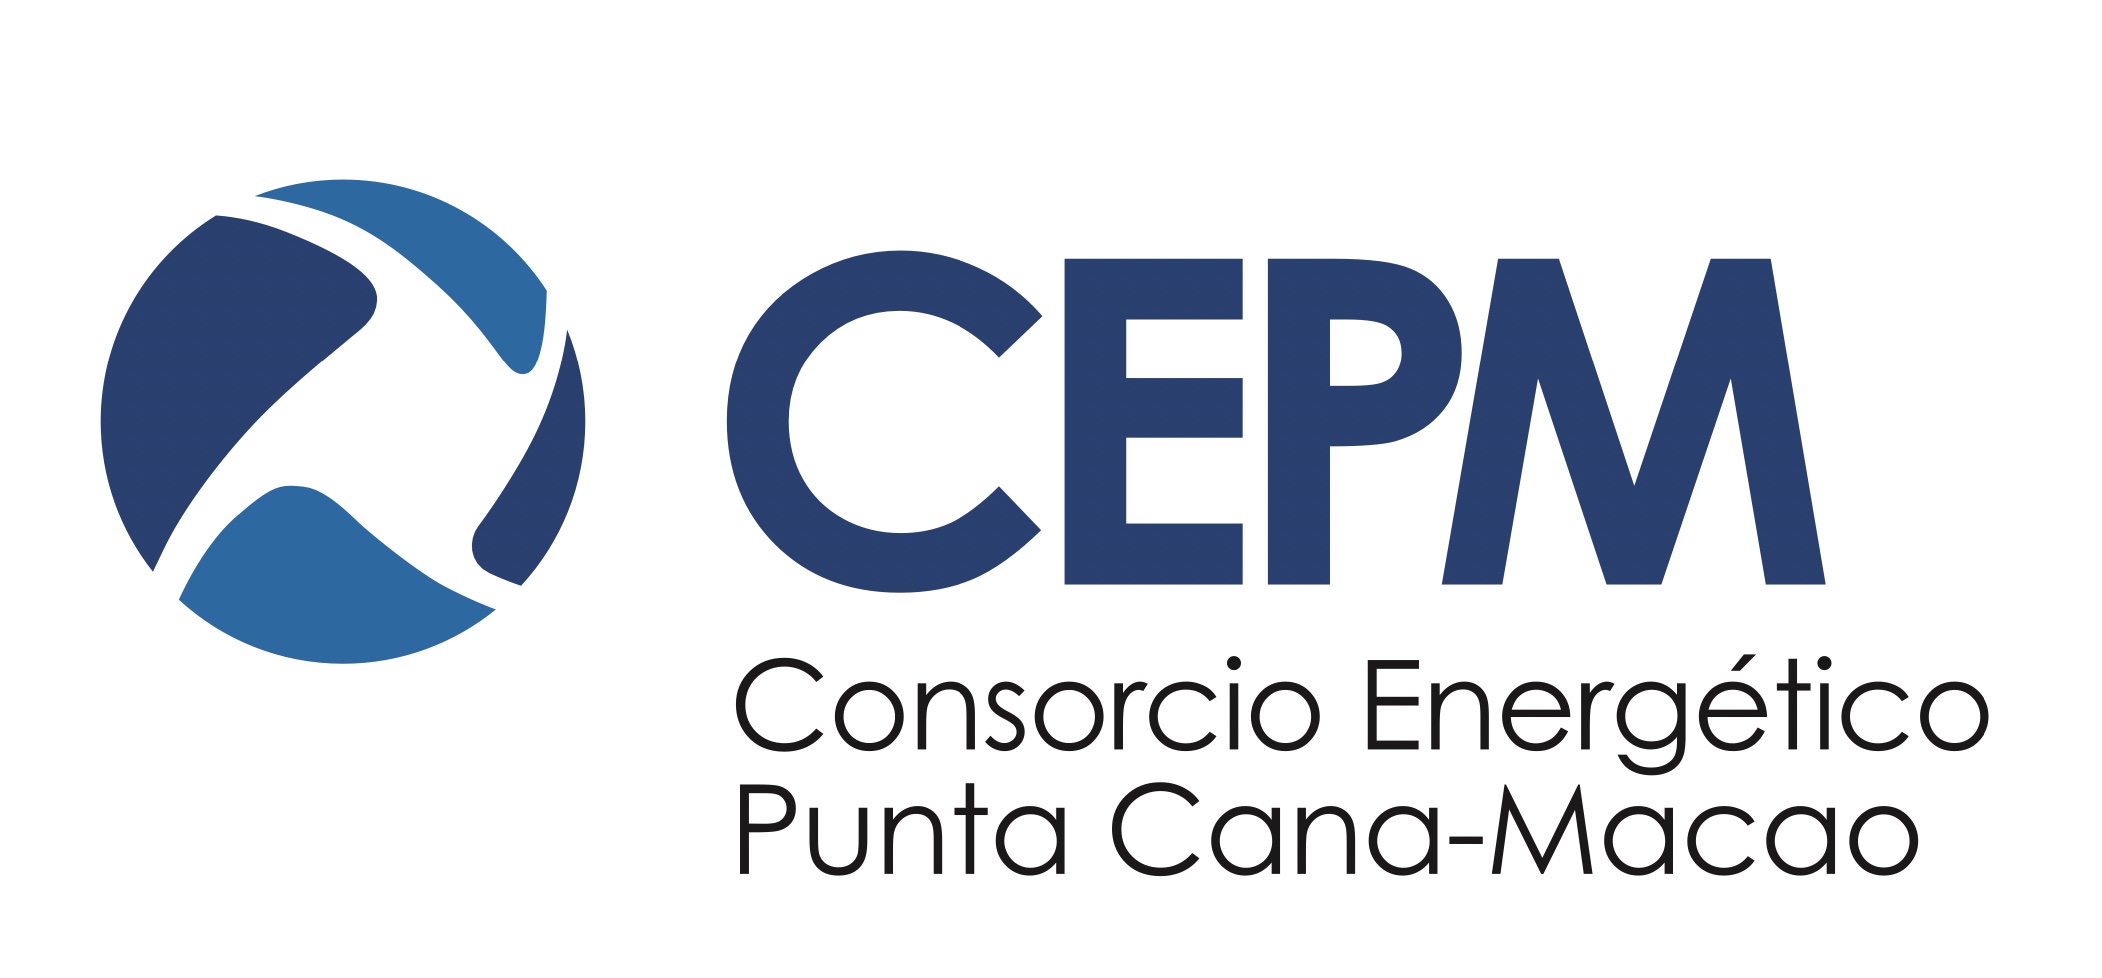 Consorcio Energético Punta Cana Macao (CEPM) logo